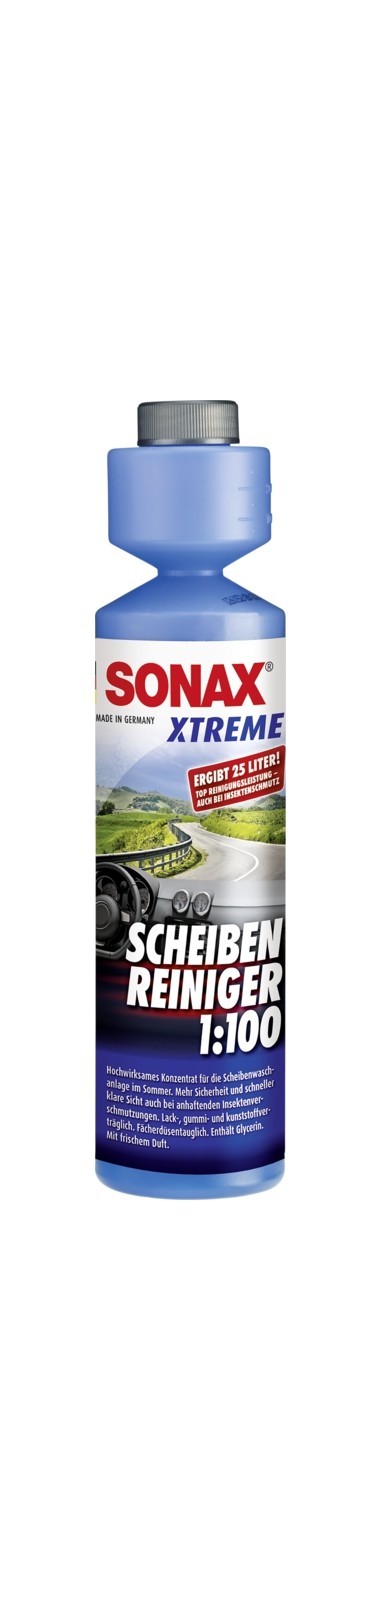 SONAX Xtreme ScheibenReiniger 1:100 (25 ml), Art.-Nr. 02711410